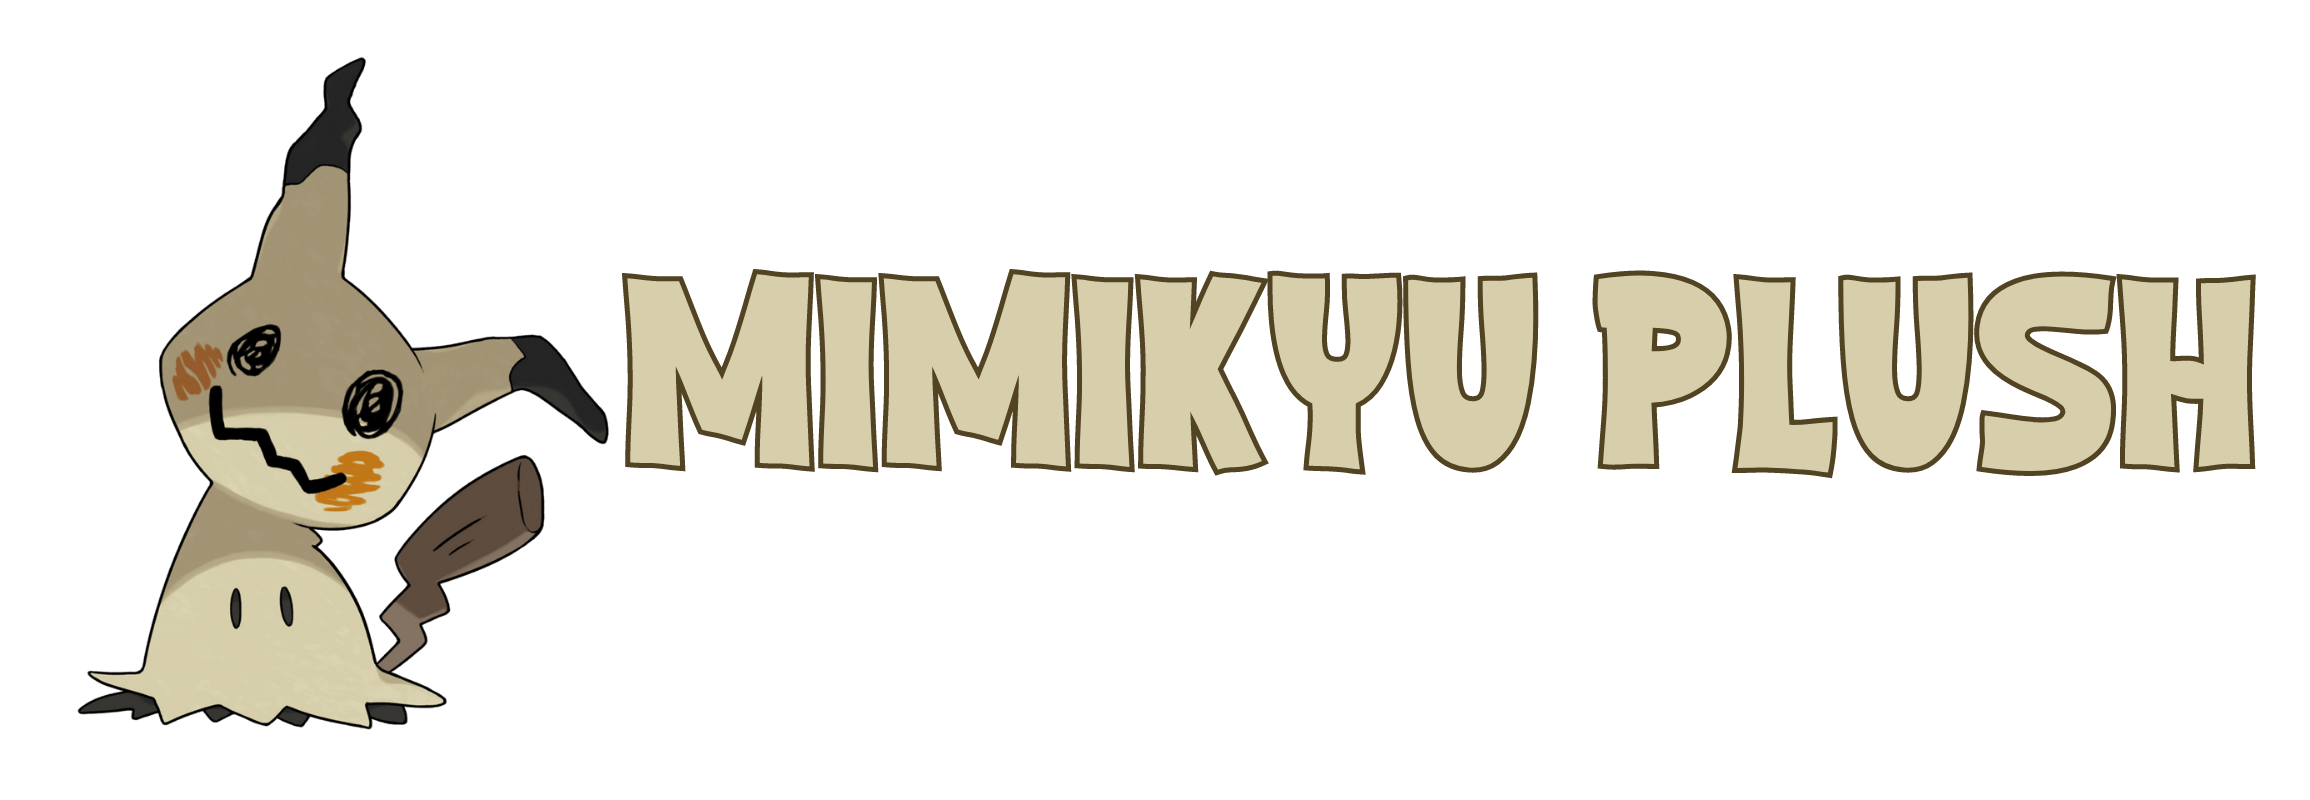 mimikyu plush logo - Mimikyu Plush